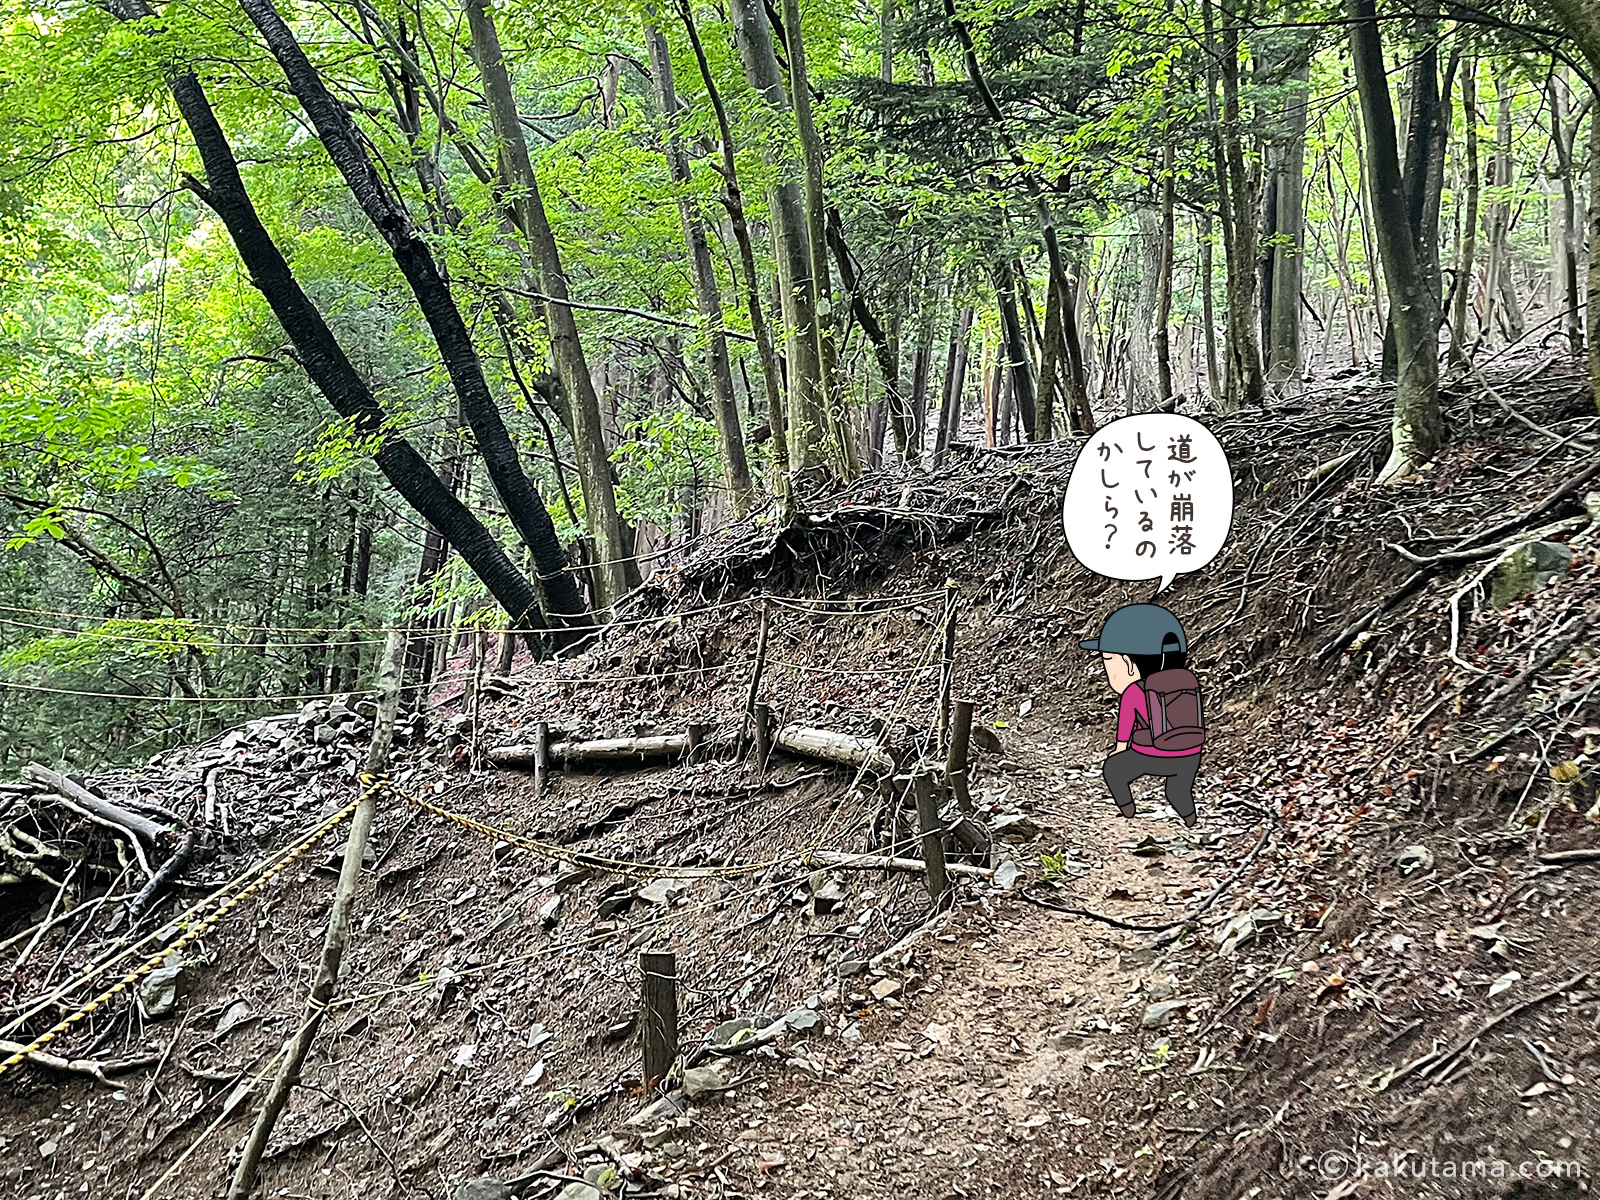 滝子山スミ沢ルートのトラロープ地帯の写真と登山者のイラスト